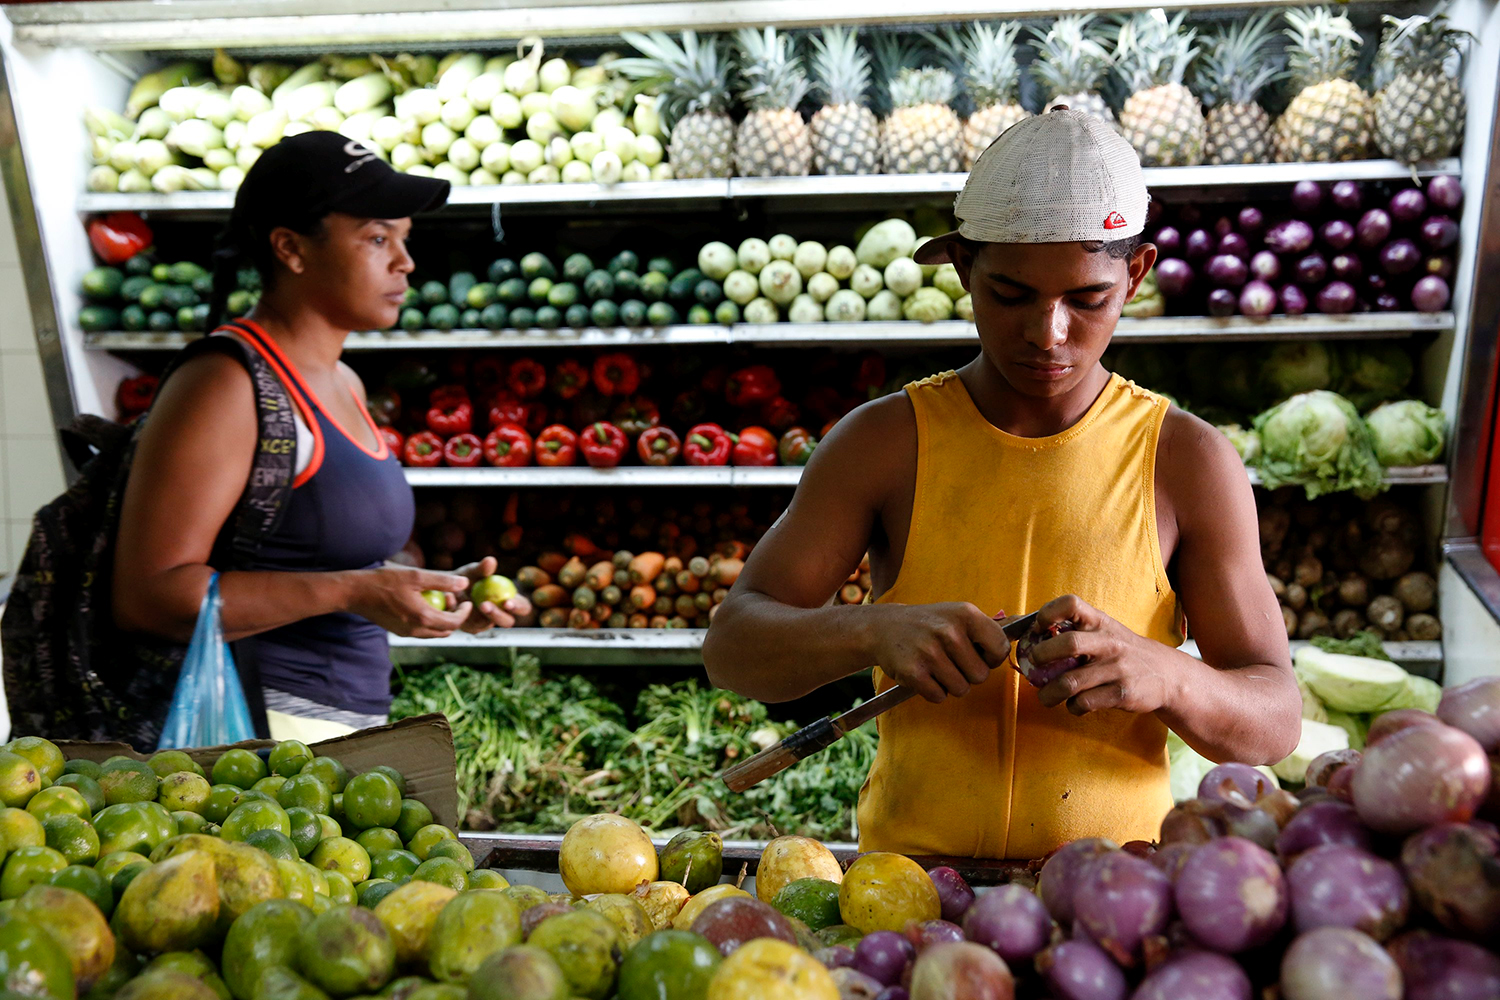 Venezuelan eating habits change due to food shortage